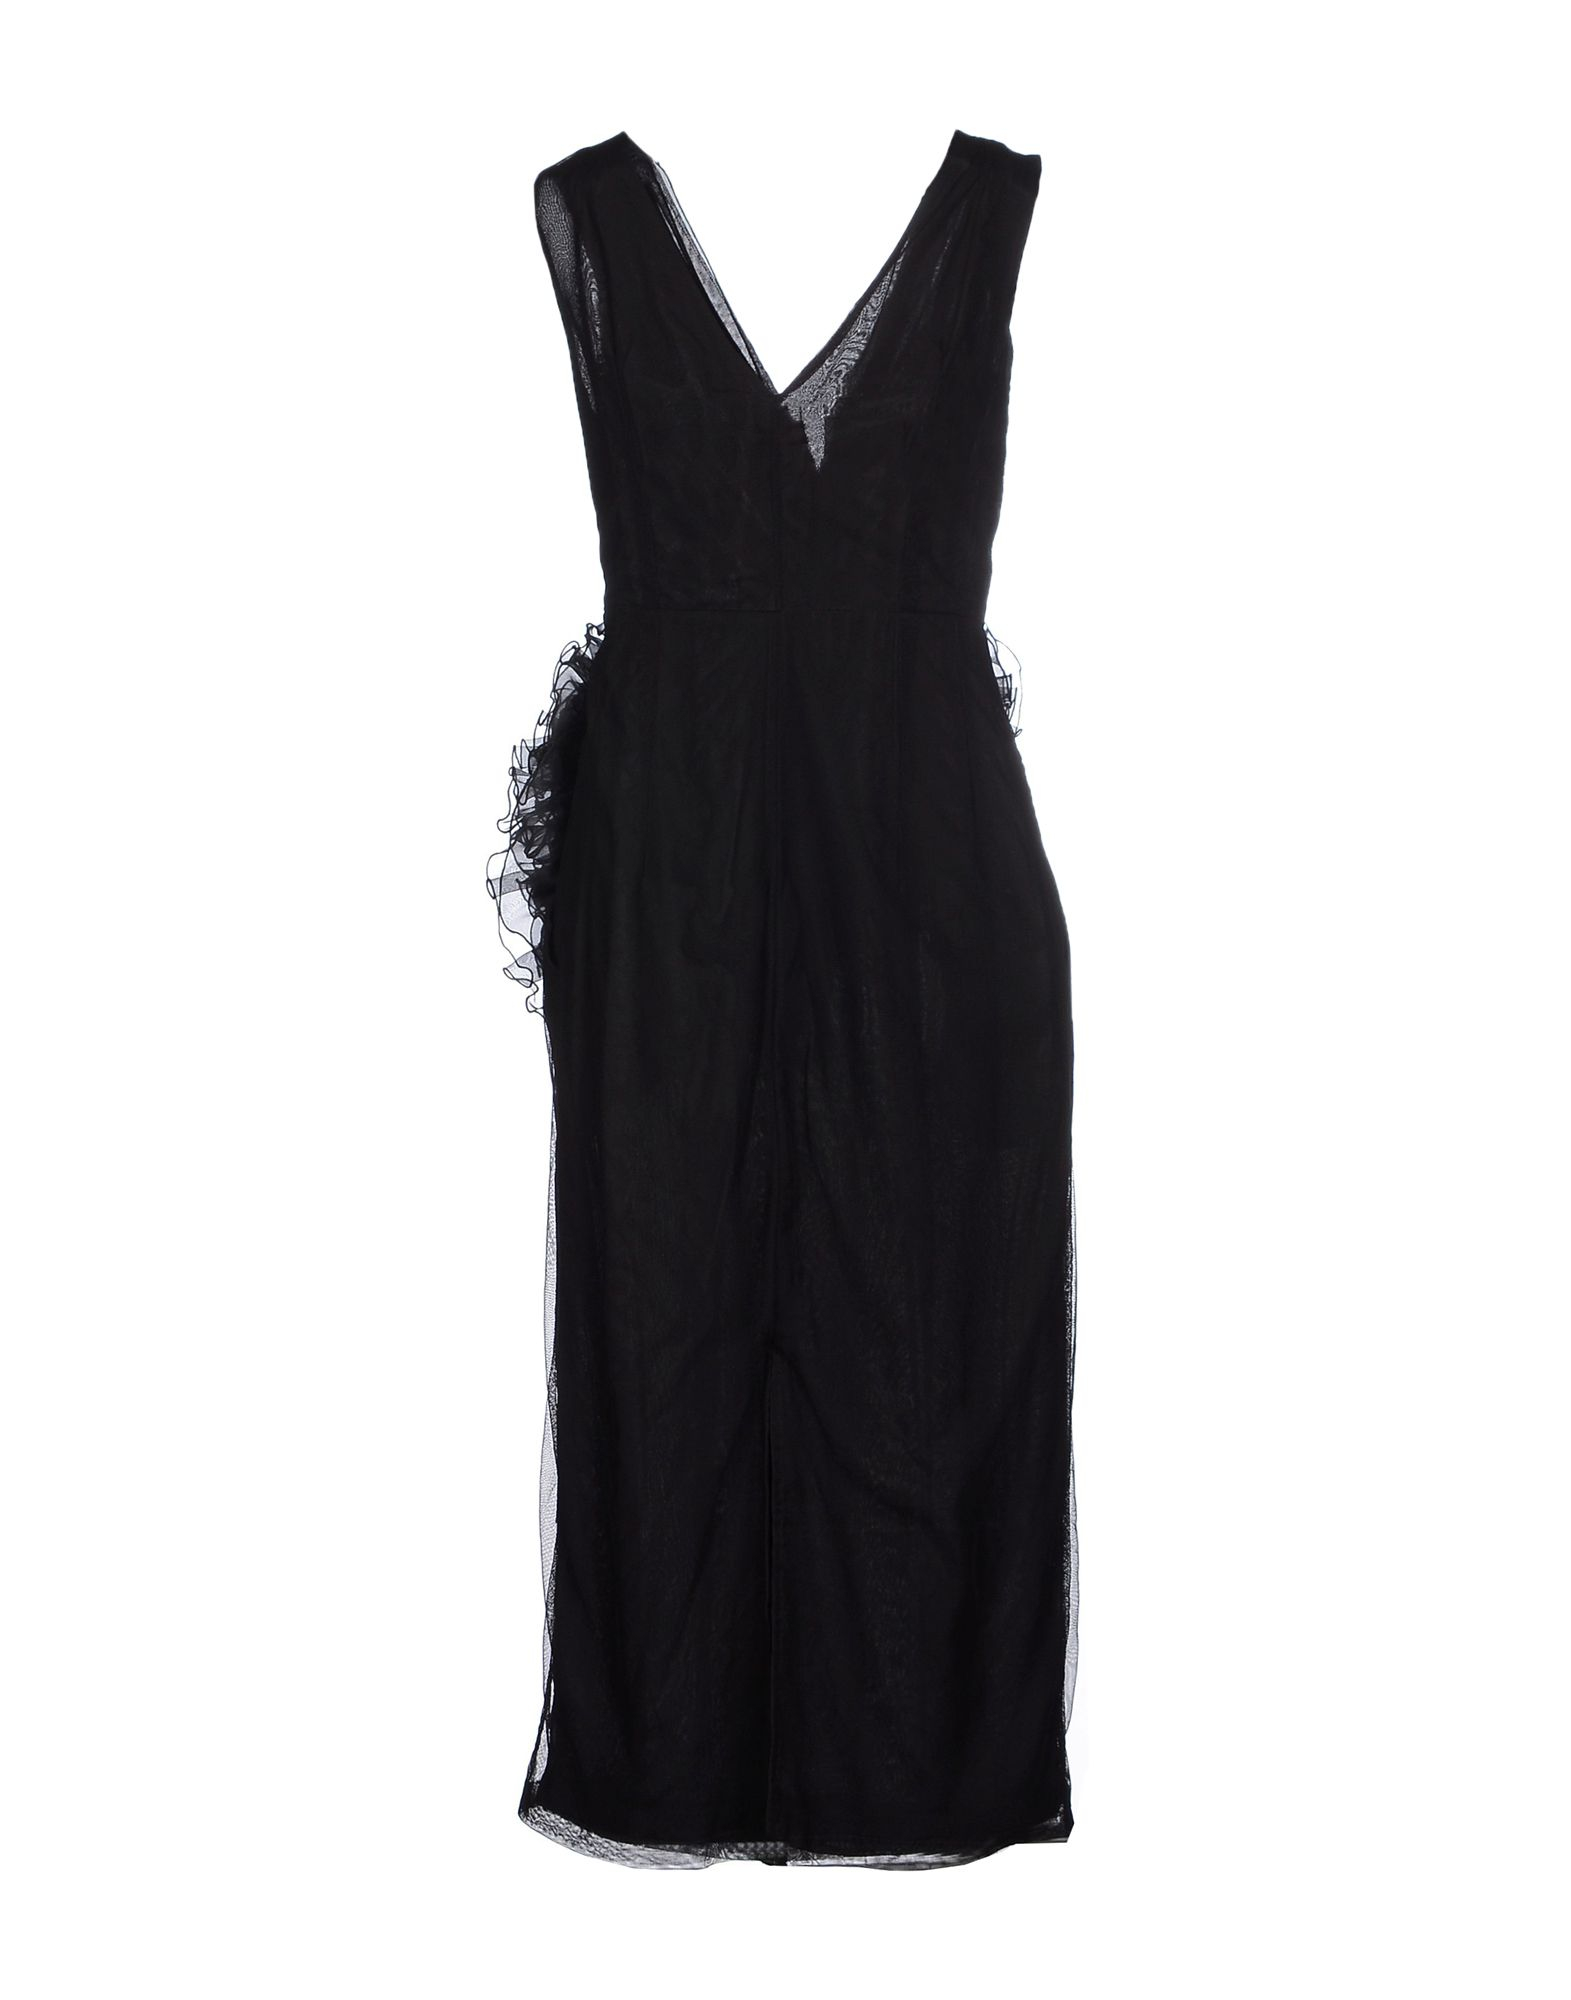 Lyst - Dries van noten 3/4 Length Dress in Black